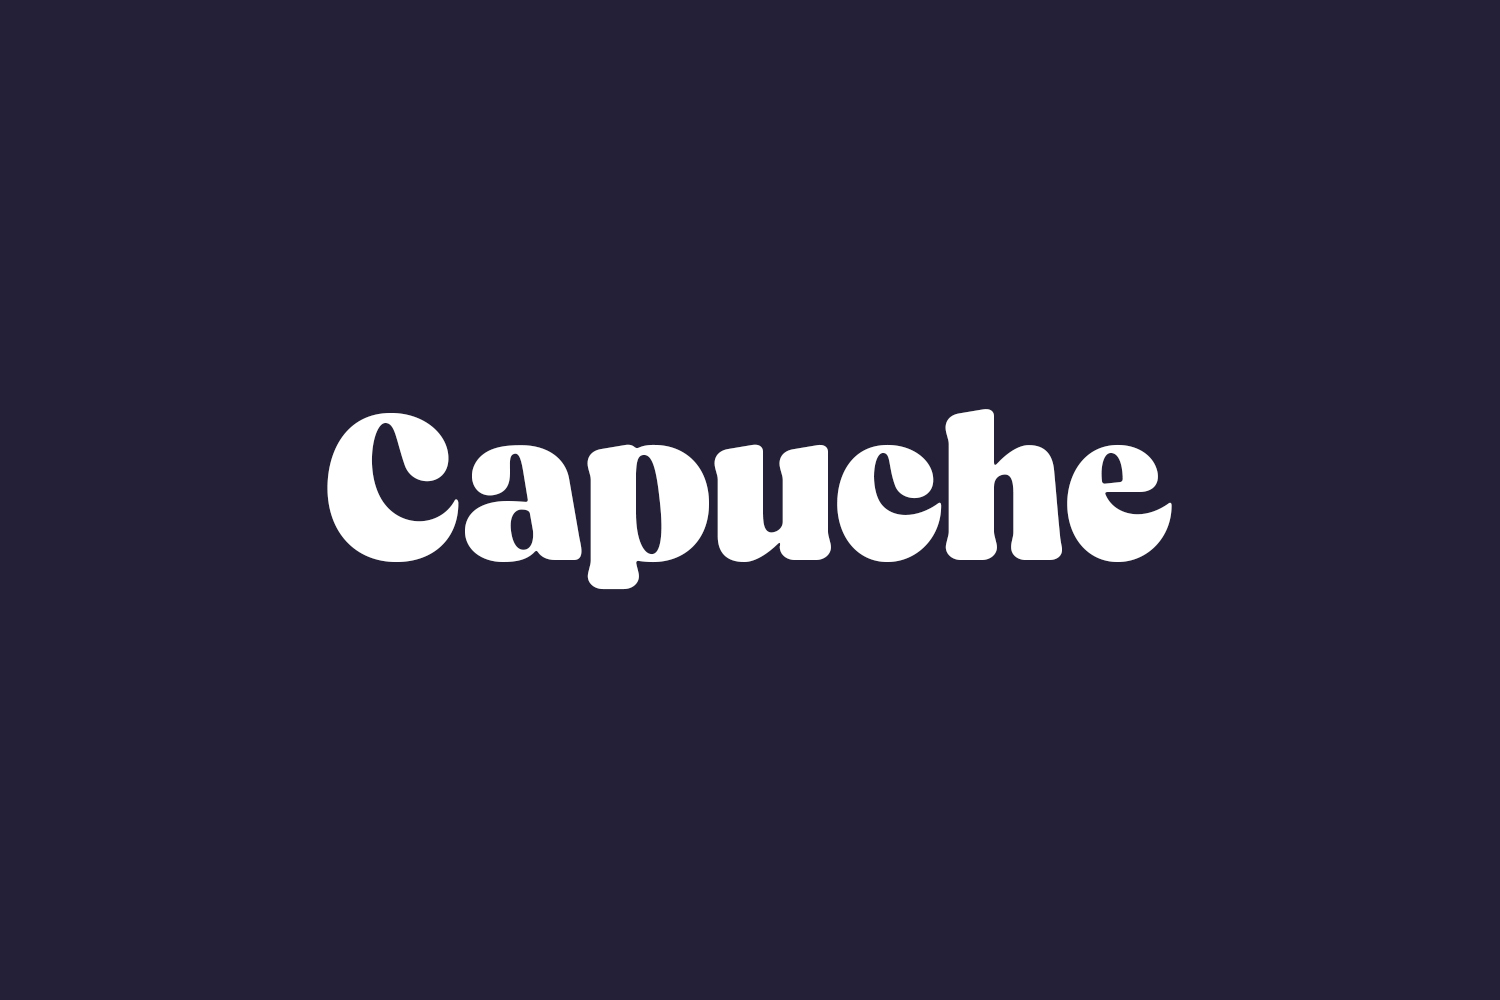 Capuche Free Font